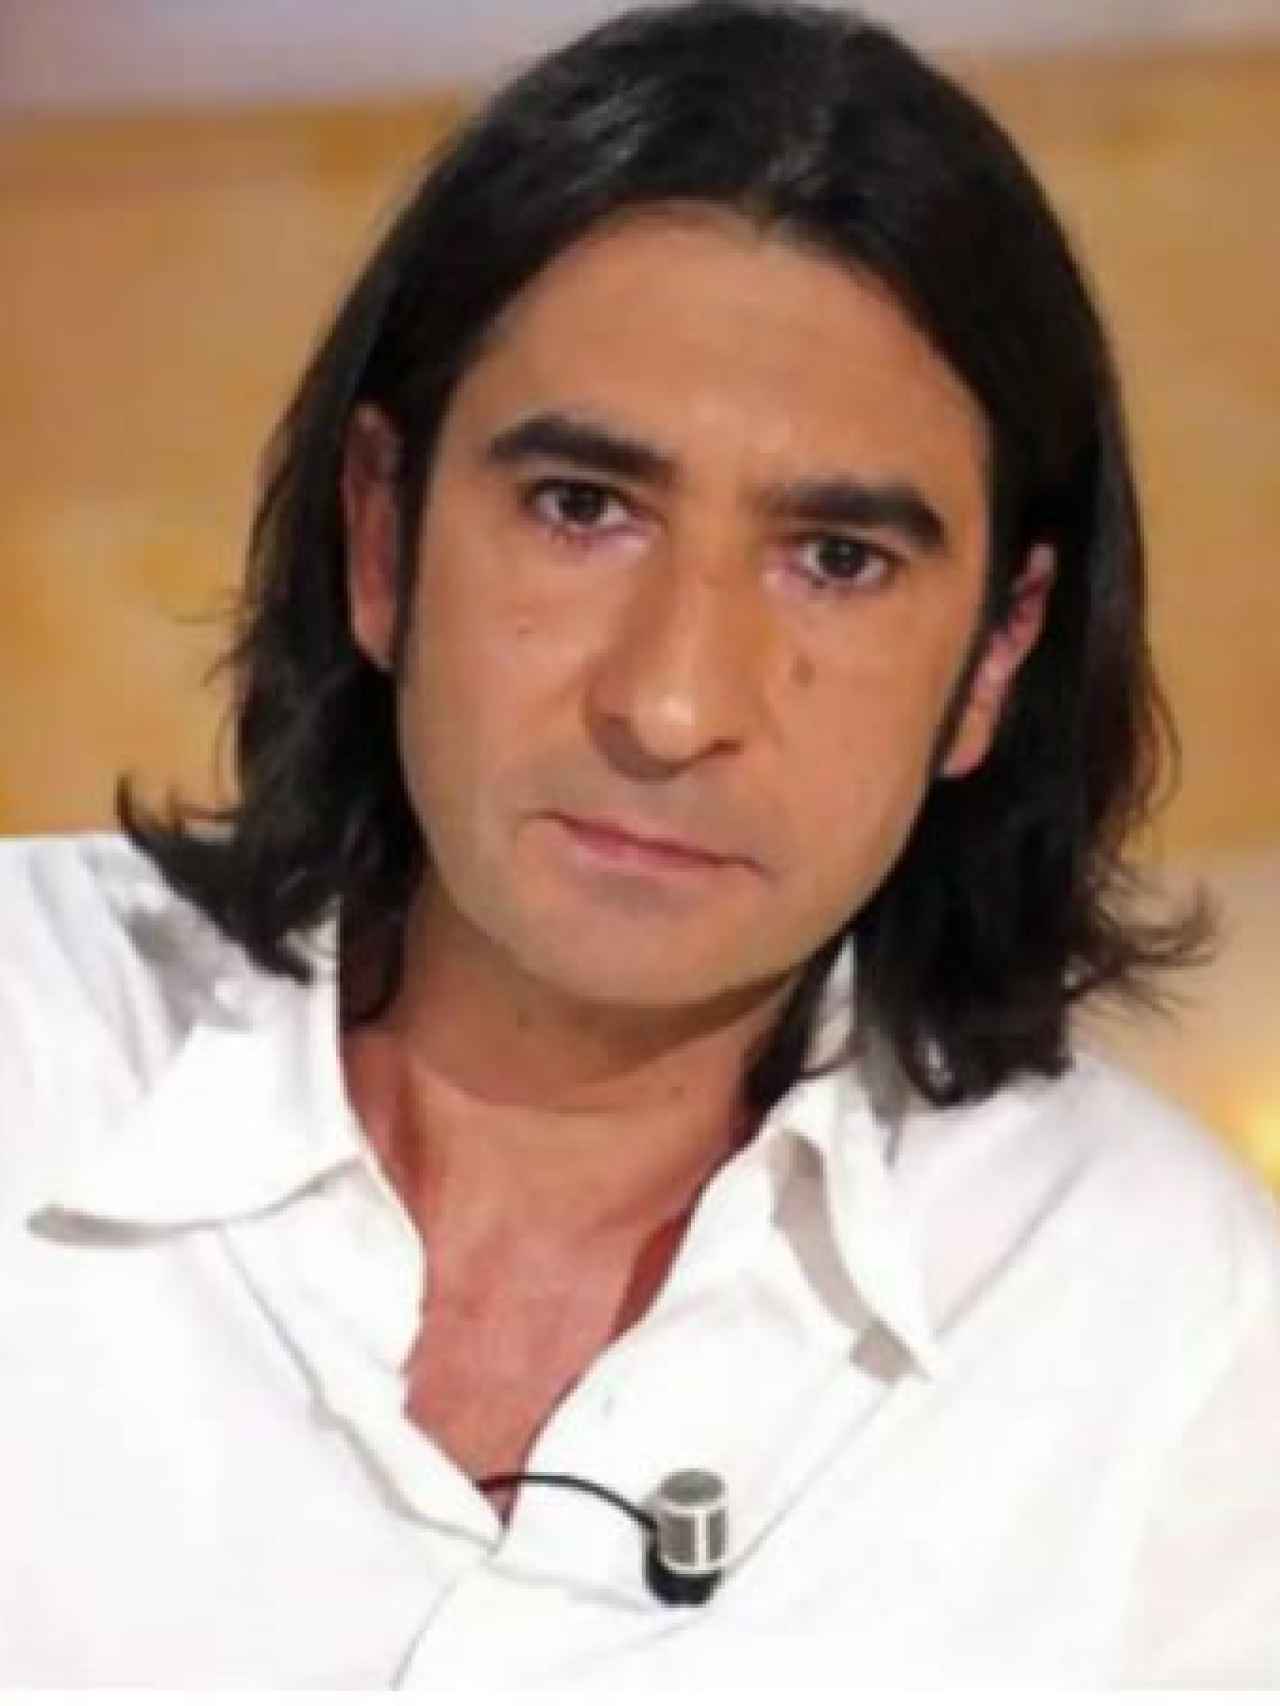 Ángel Antonio Herrera en una imagen tomada hace unos años en un plató de televisión.